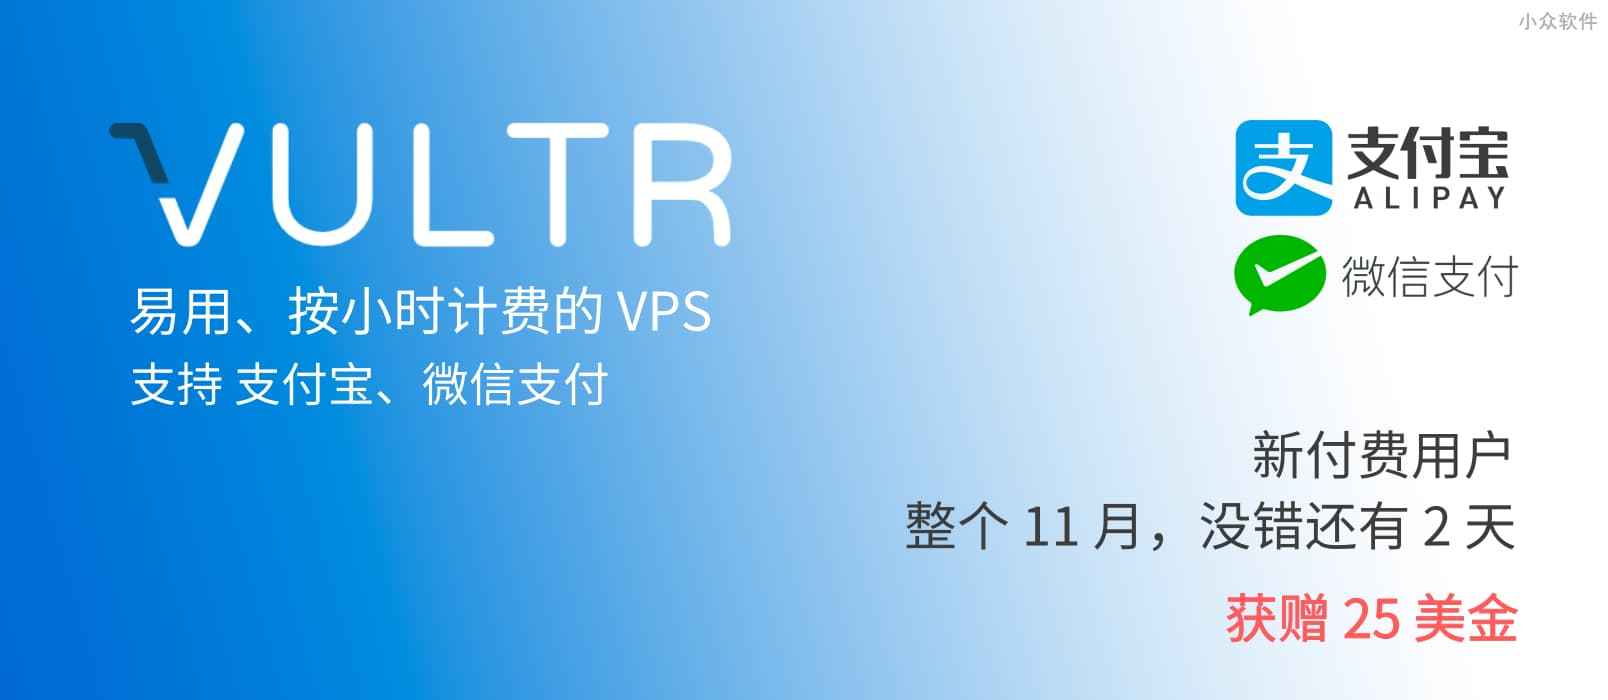 著名 VPS 提供商 Vultr 已支持支付宝、微信支付 1